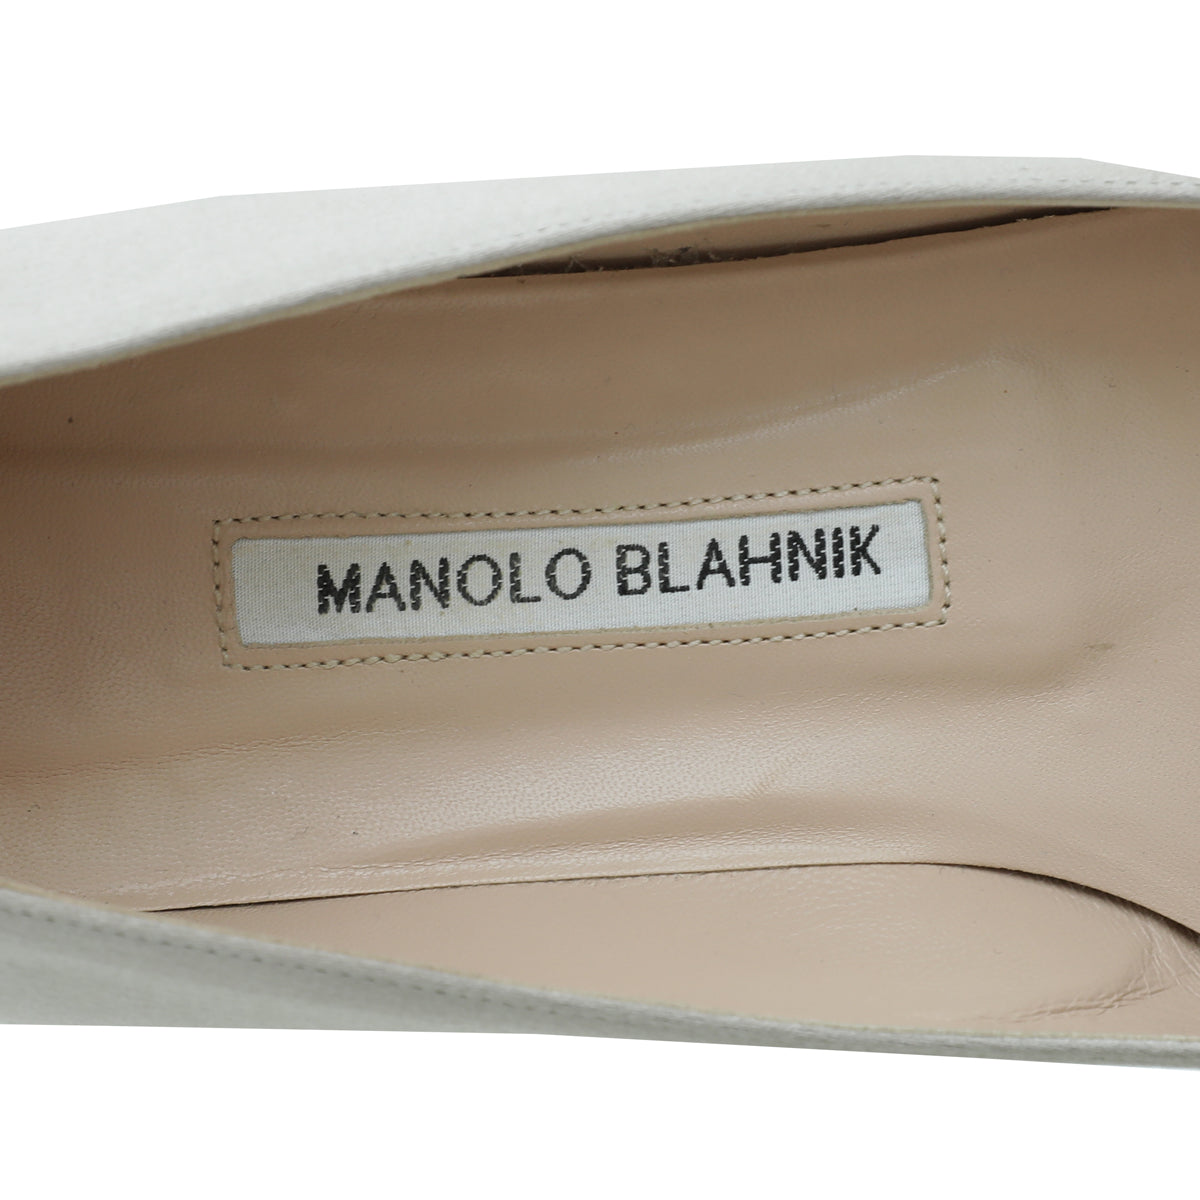 Manolo Blahnik Light Grey Satin Hangisi Flat Ballerina 39